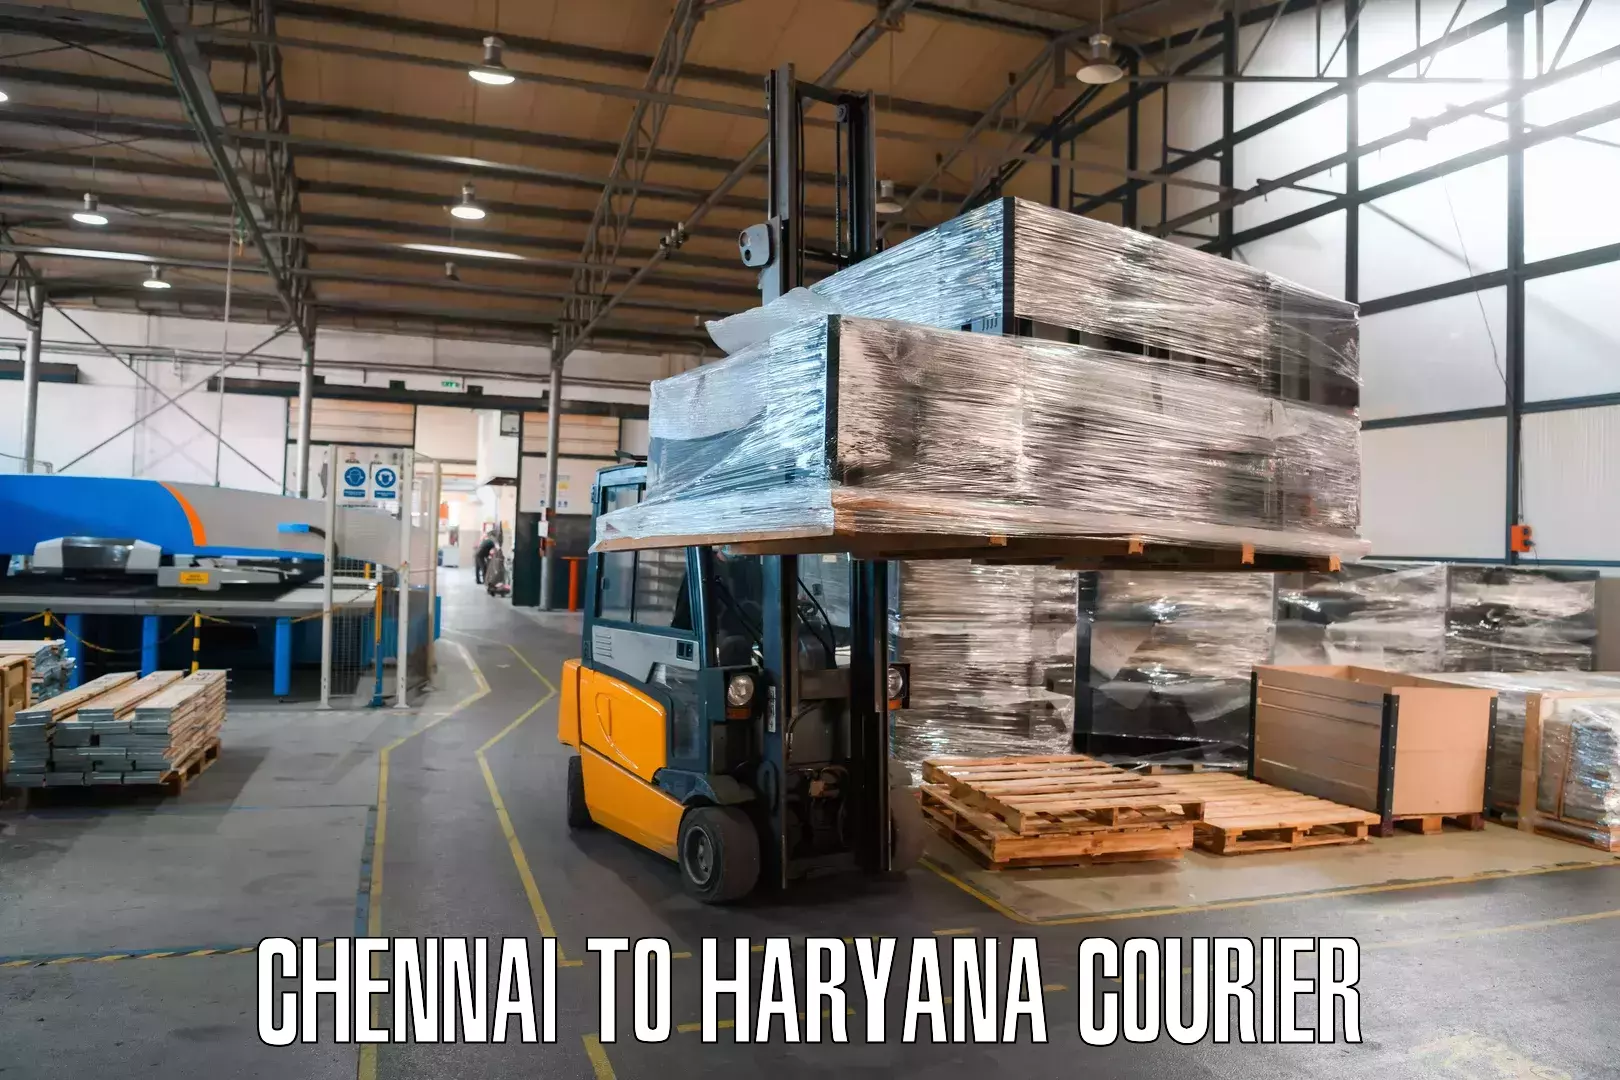 Customer-centric shipping Chennai to Narwana